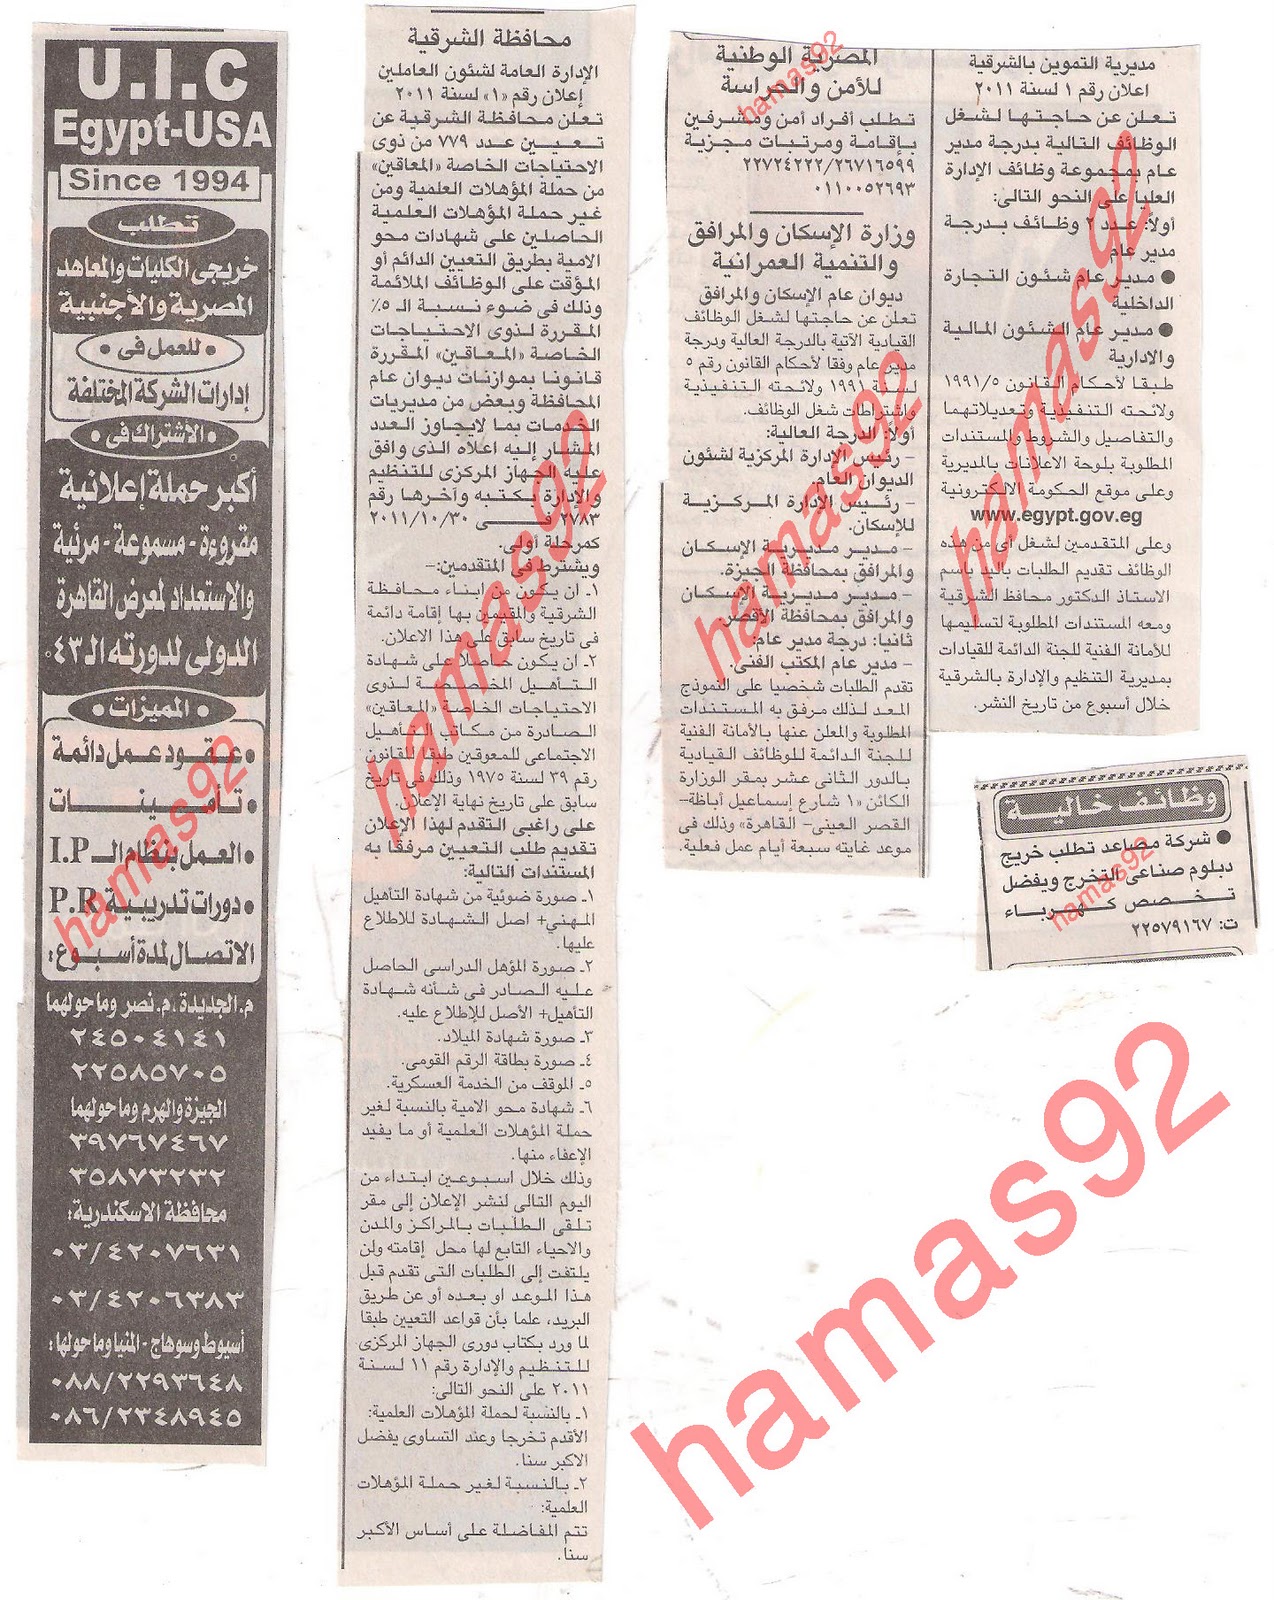 وظائف جريدة الاخبارالثلاثاء 15\11\2011  Picture+003